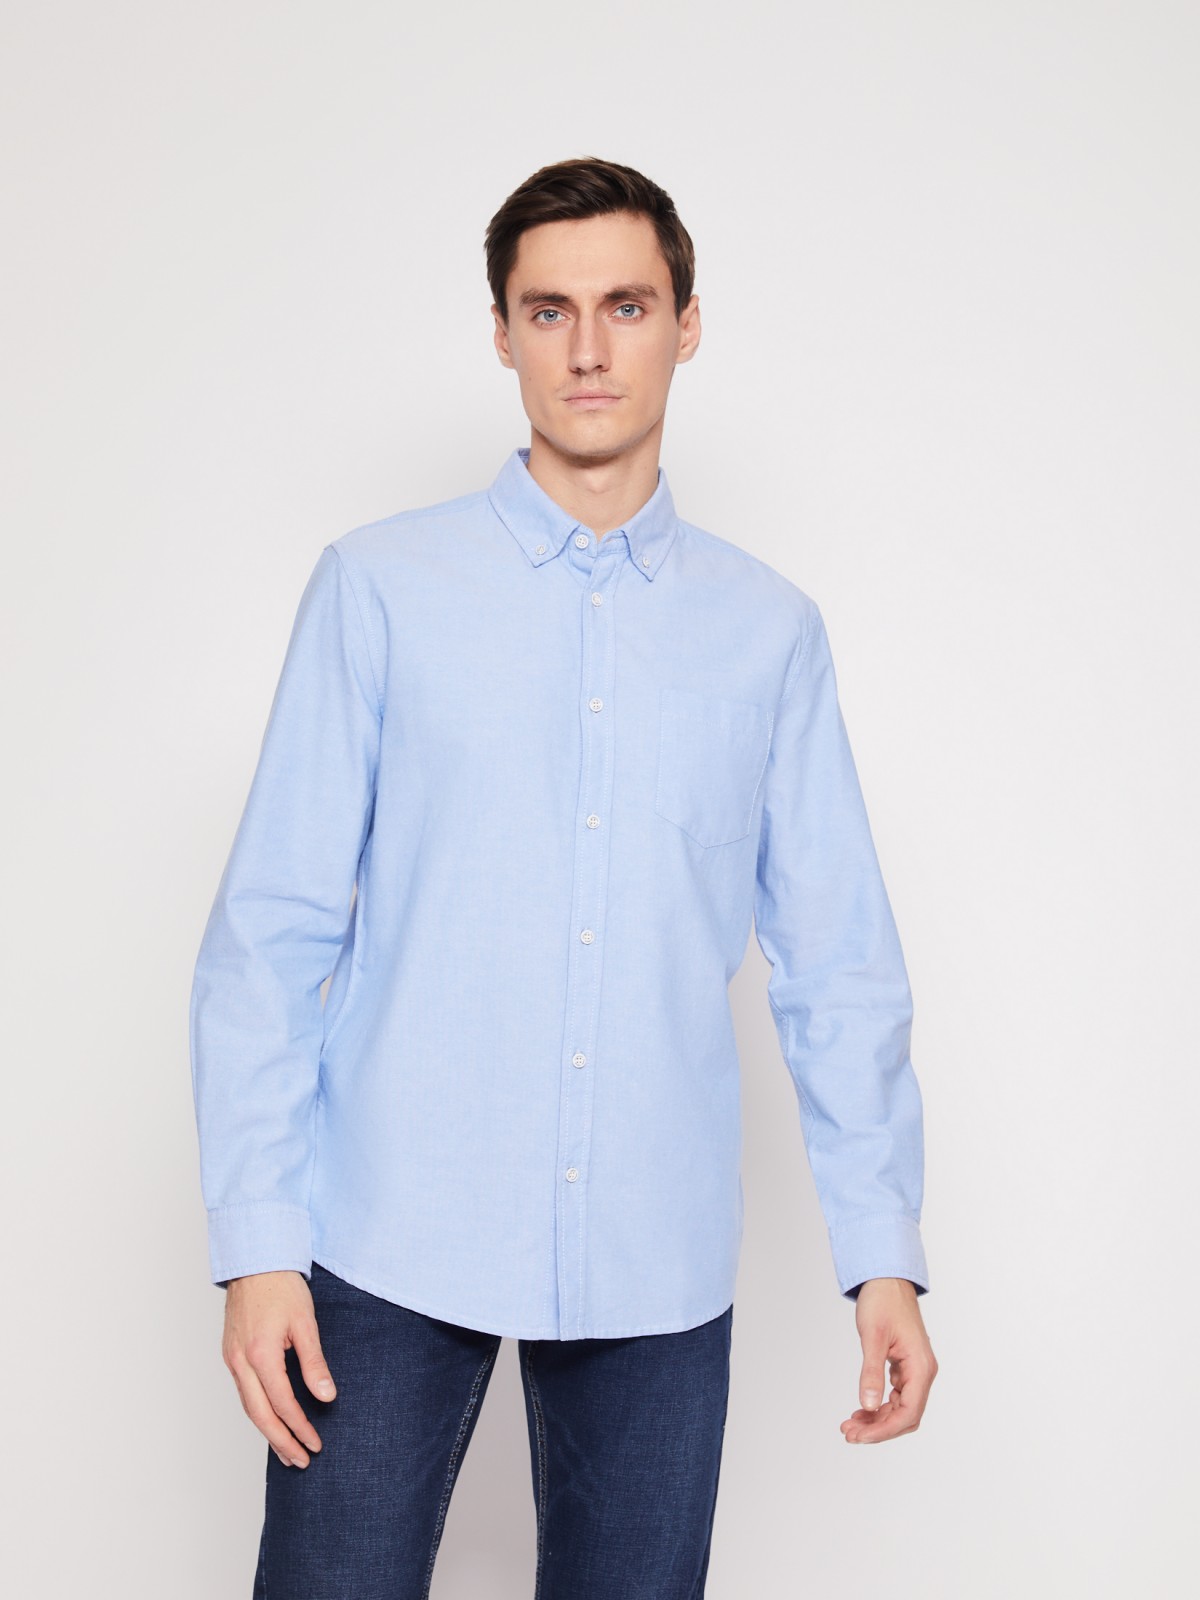 Хлопковая рубашка с длинным рукавом zolla 012122191013, цвет светло-голубой, размер M - фото 2